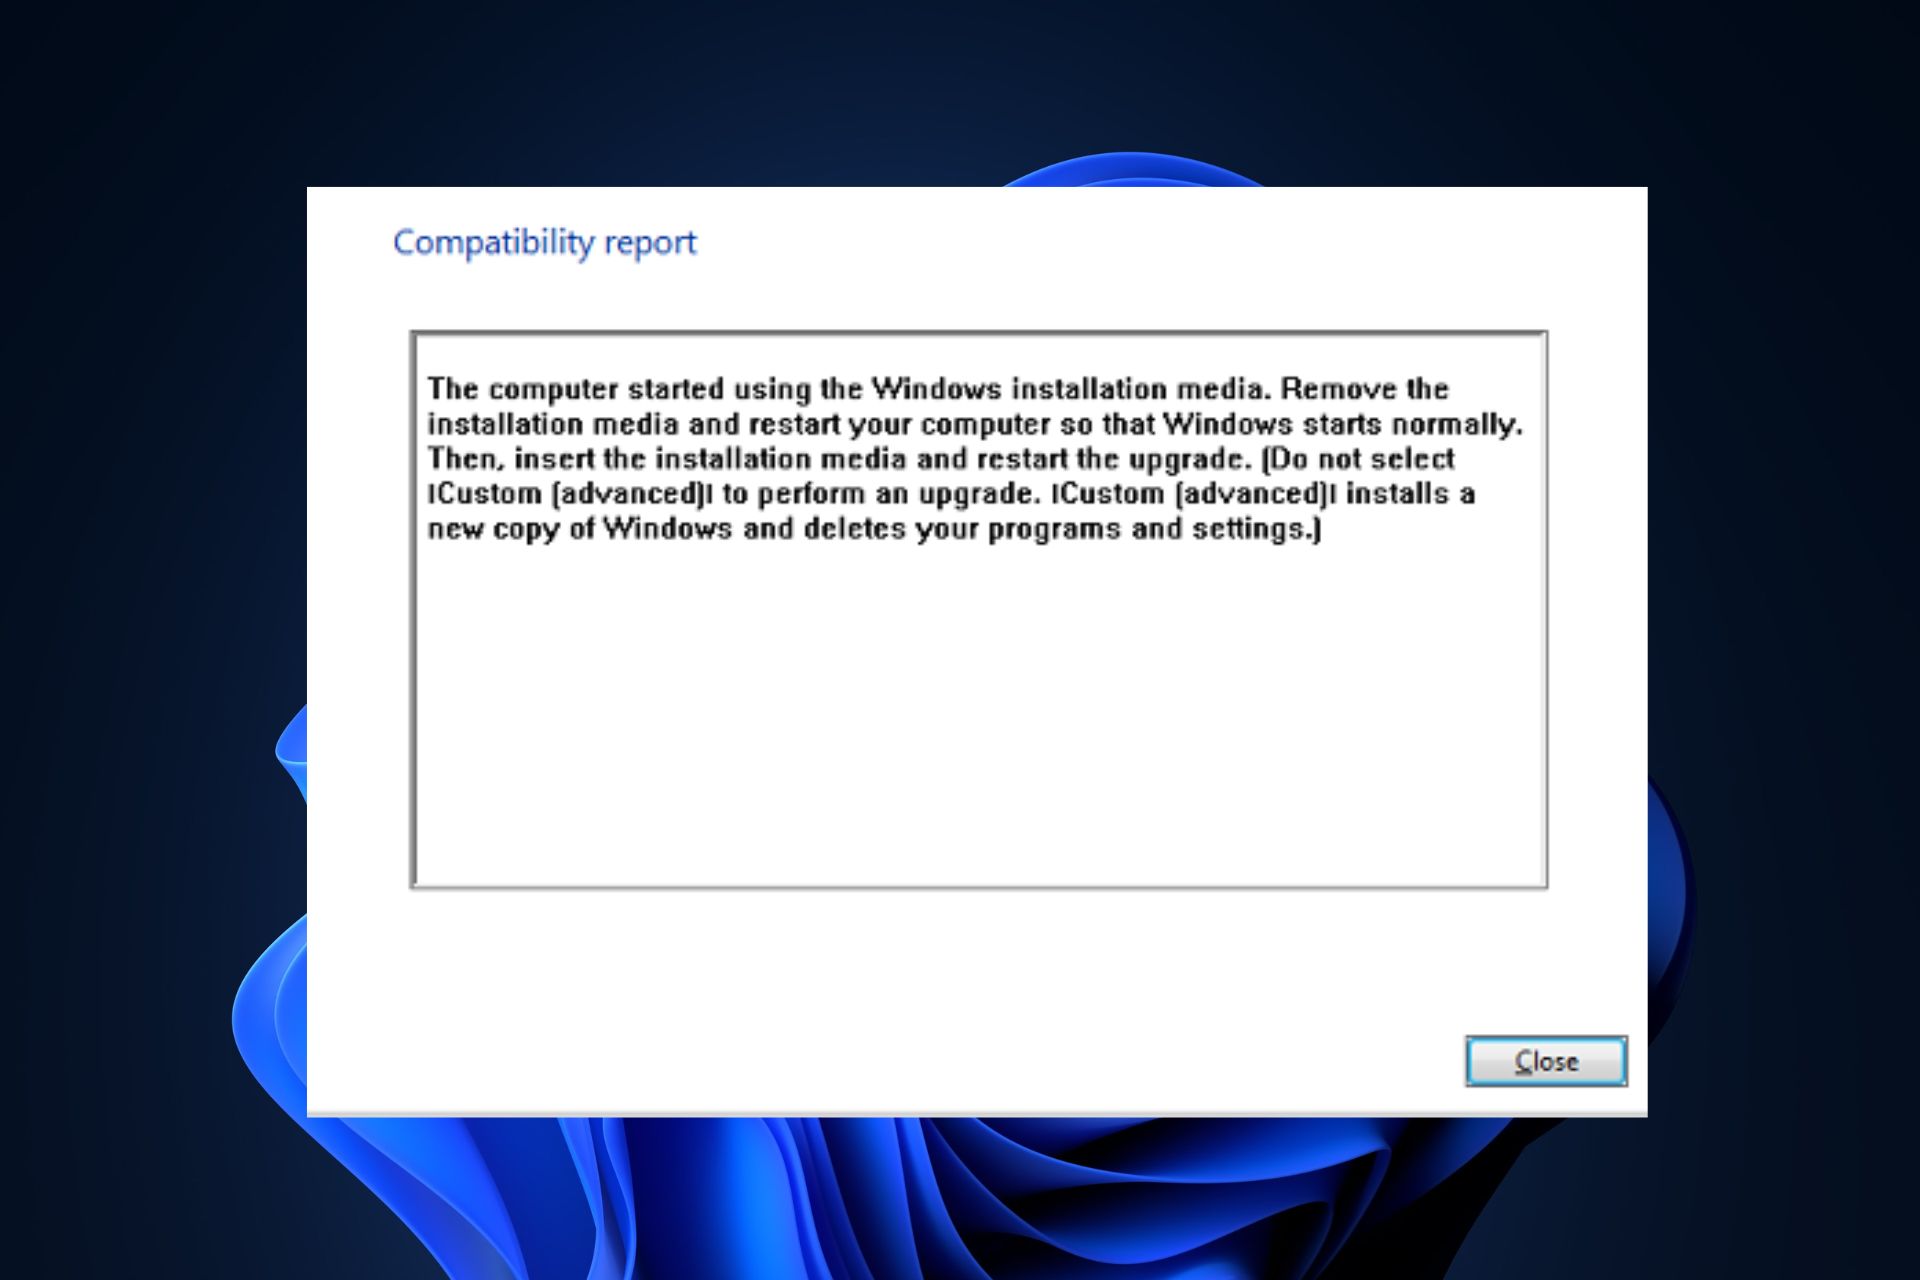 la computadora comenzó a usar los medios de instalación de Windows